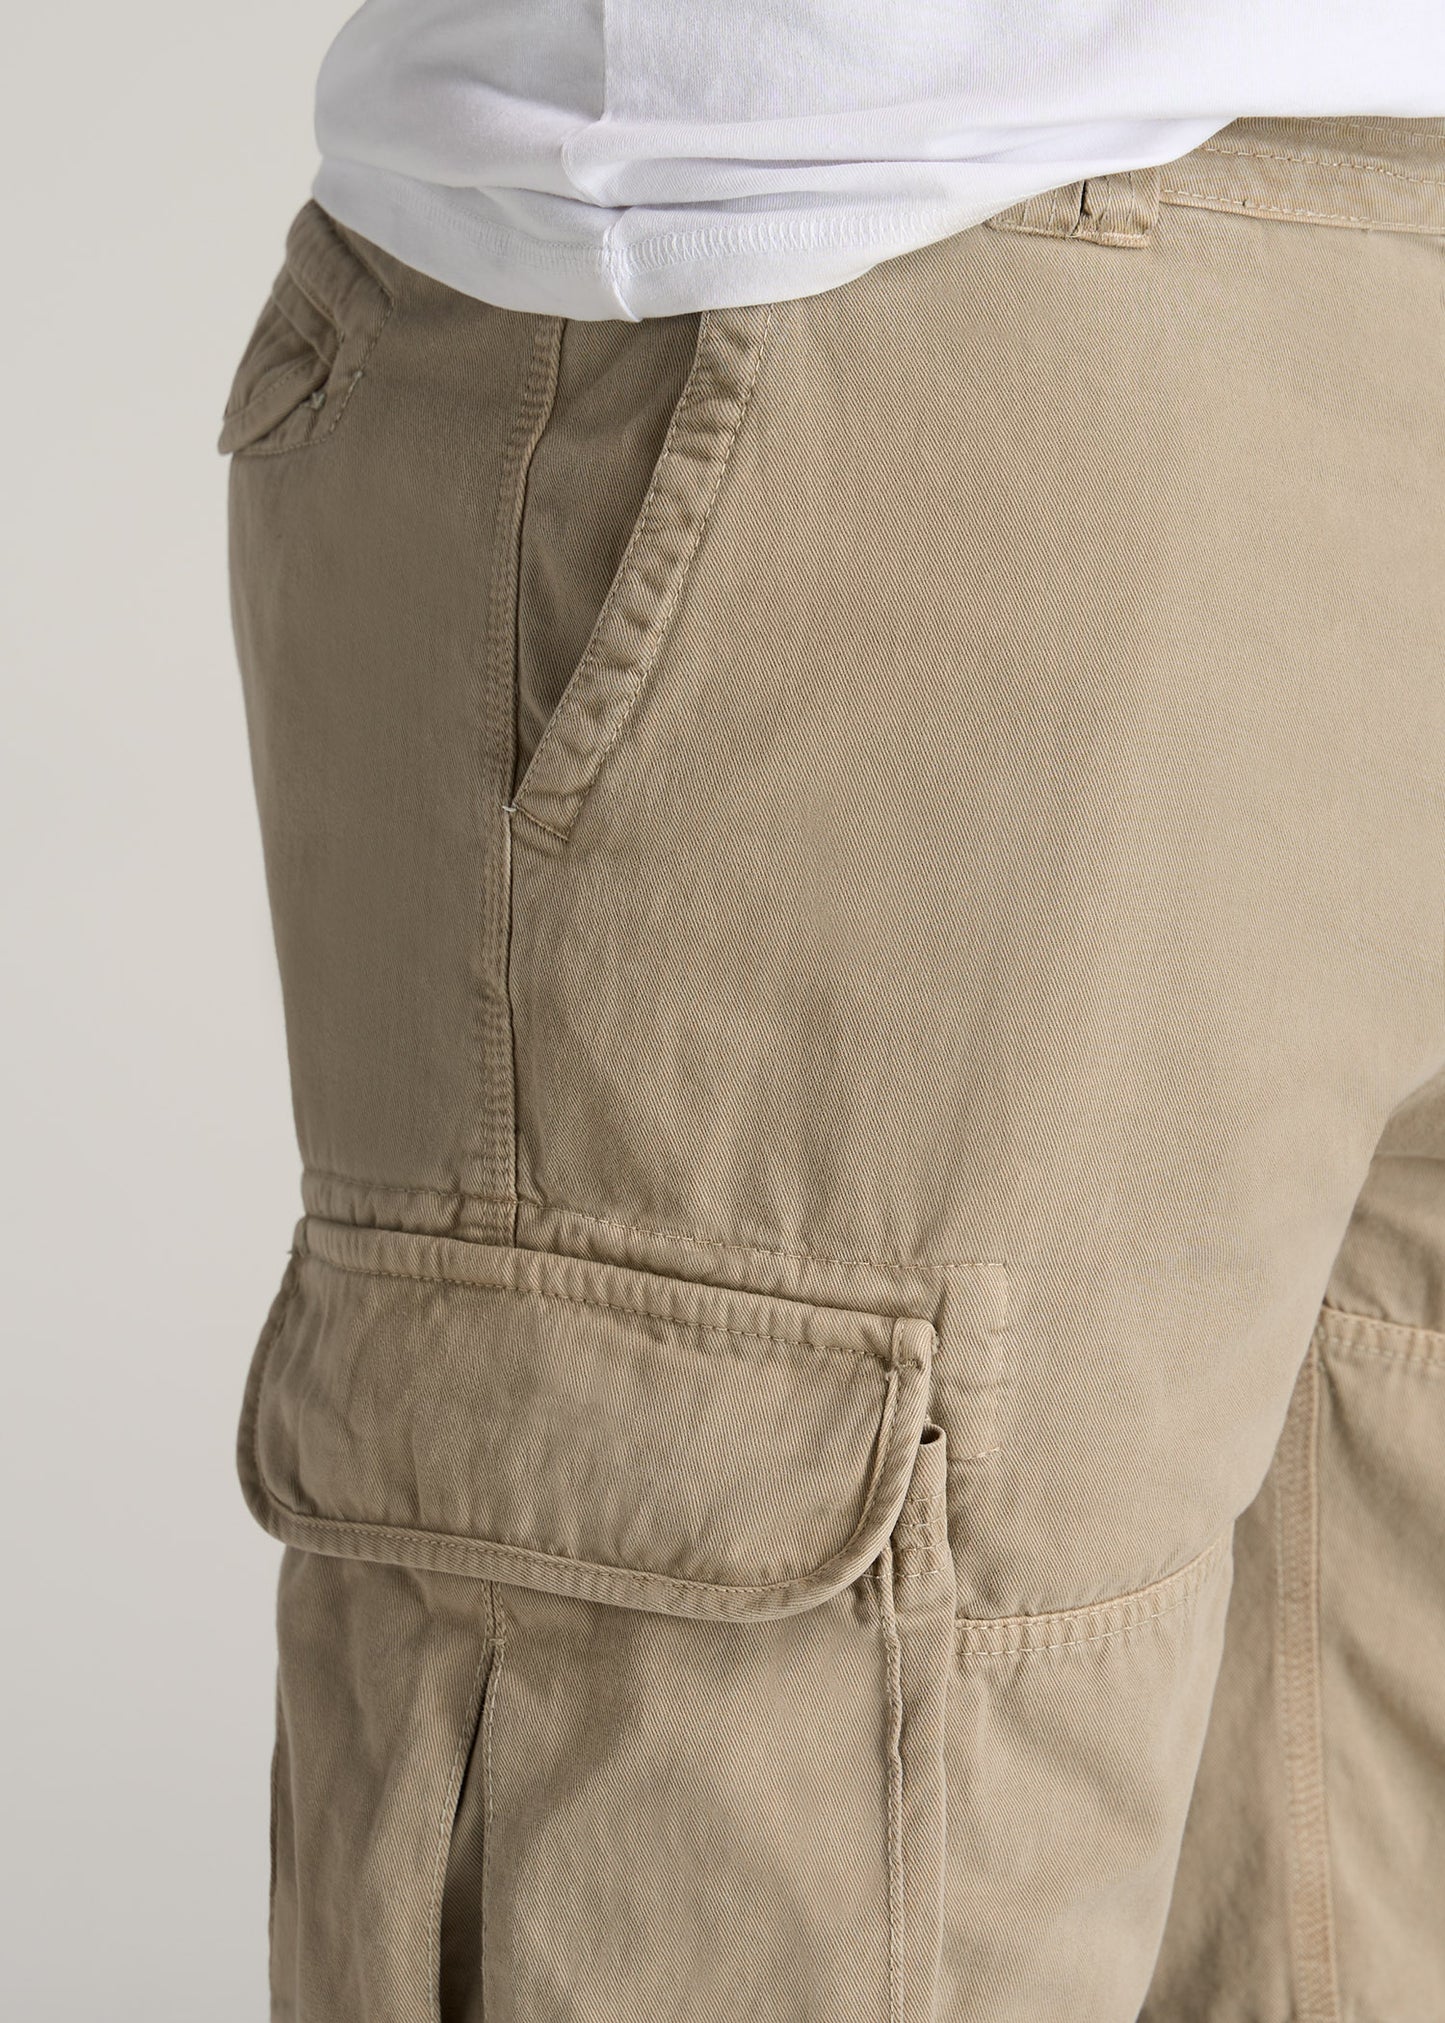    American-Tall-Men-LJ-Cargo-Pocket-Shorts-Vintage-Buck-detail